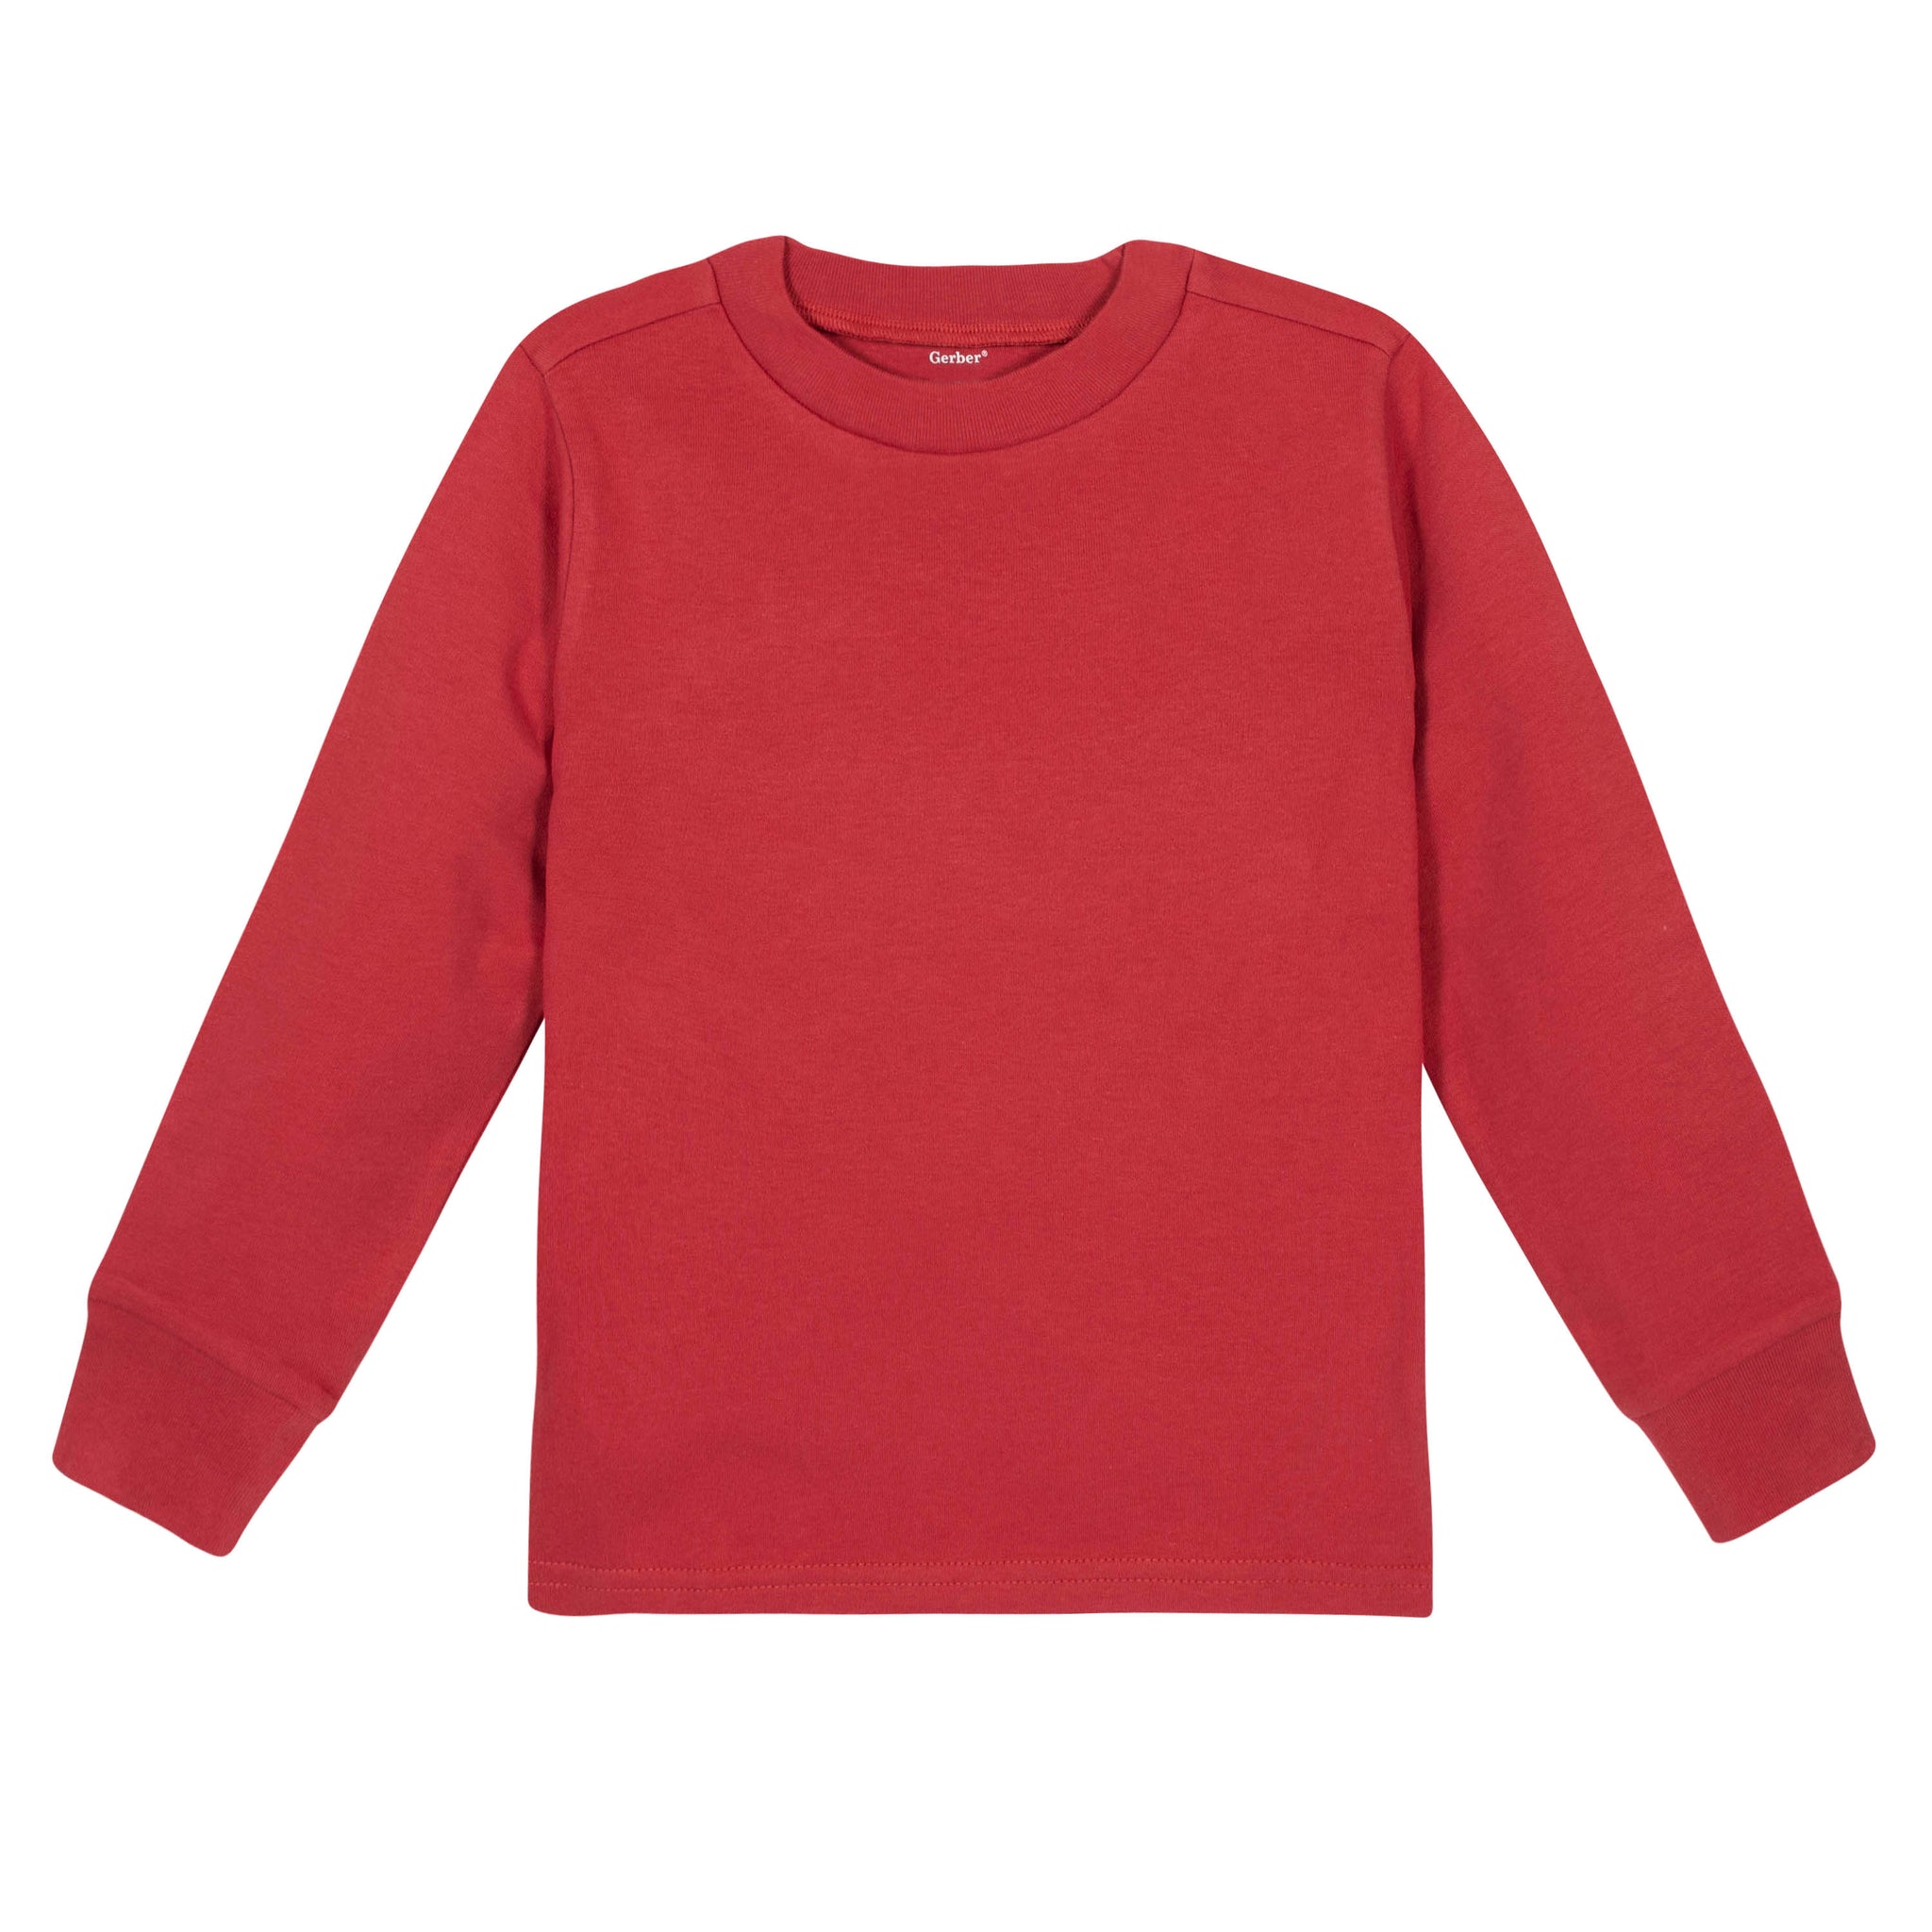 Premium Long Sleeve Tee in Red-Gerber Childrenswear Wholesale